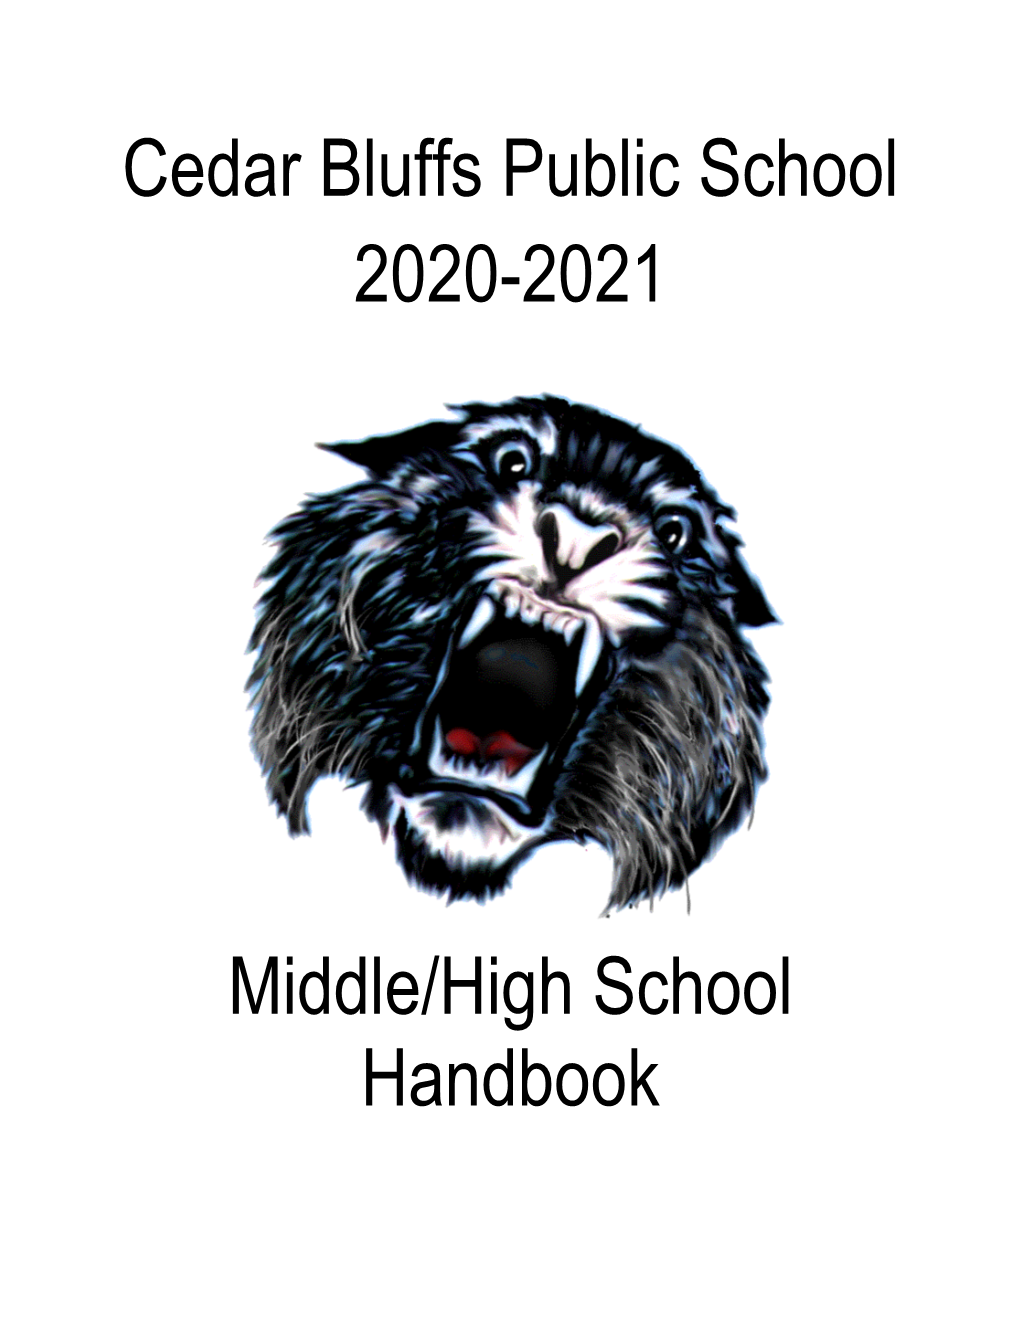 Cedar Bluffs Public School 2020-2021 Middle/High School